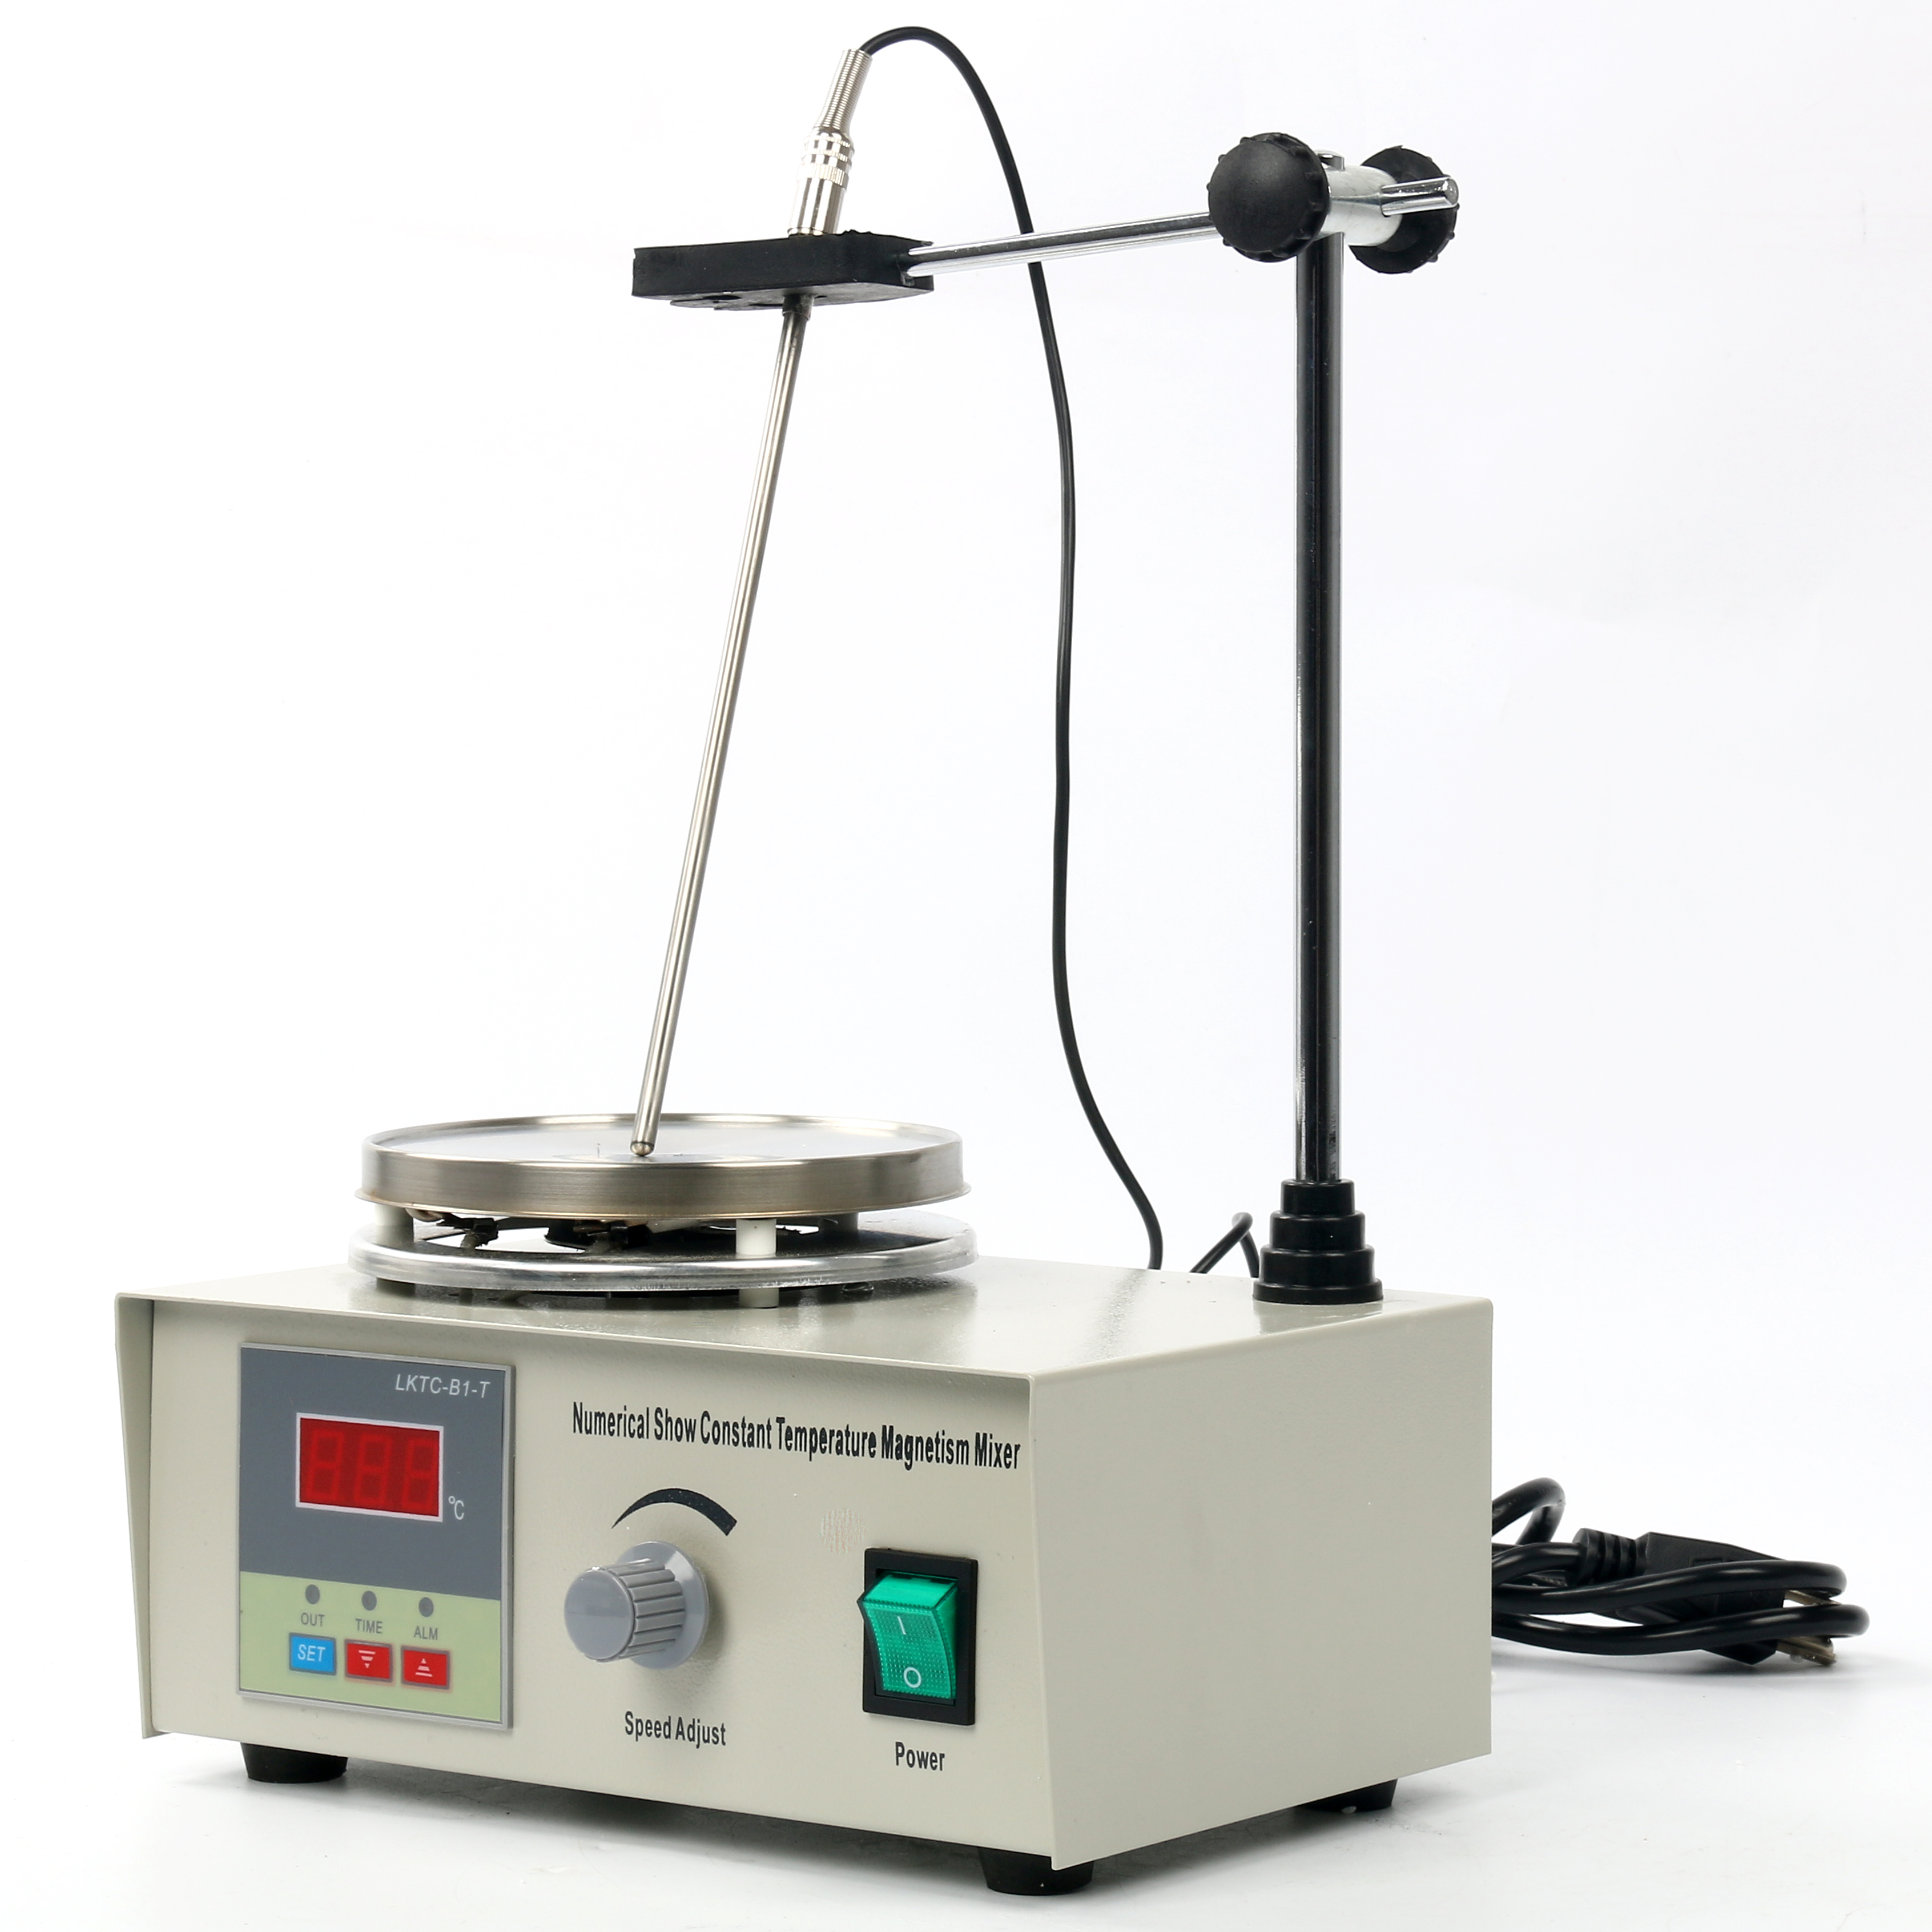 Magnetic Stirrer with heating plate 85-2 hotplate mixer 110V//220V U